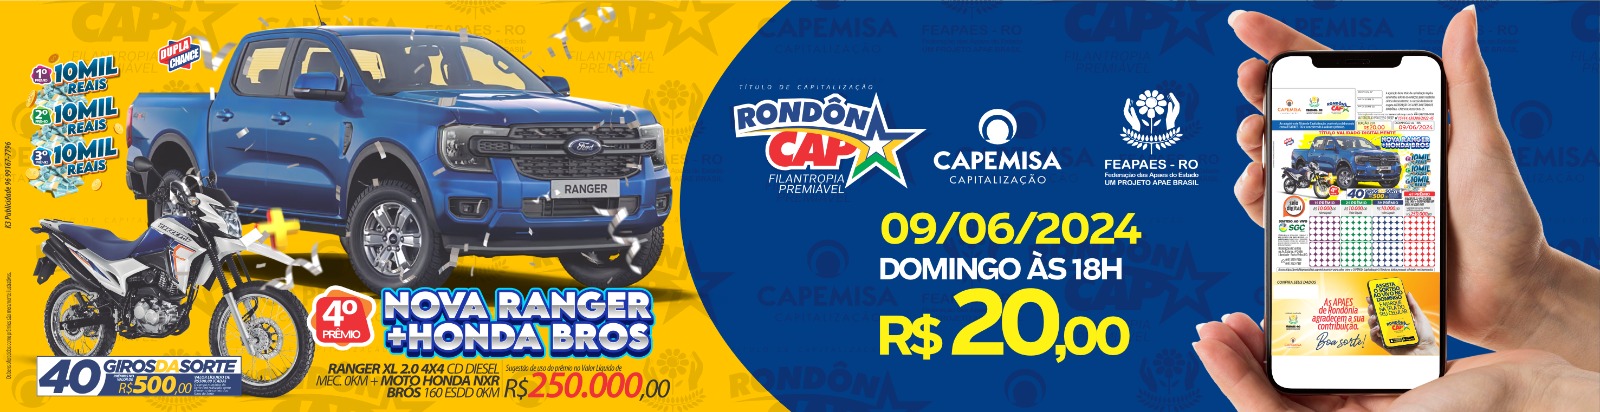 RondônCap sorteou uma T-Cross e mais 35 mil reais em prêmios no primeiro domingo de junho - News Rondônia